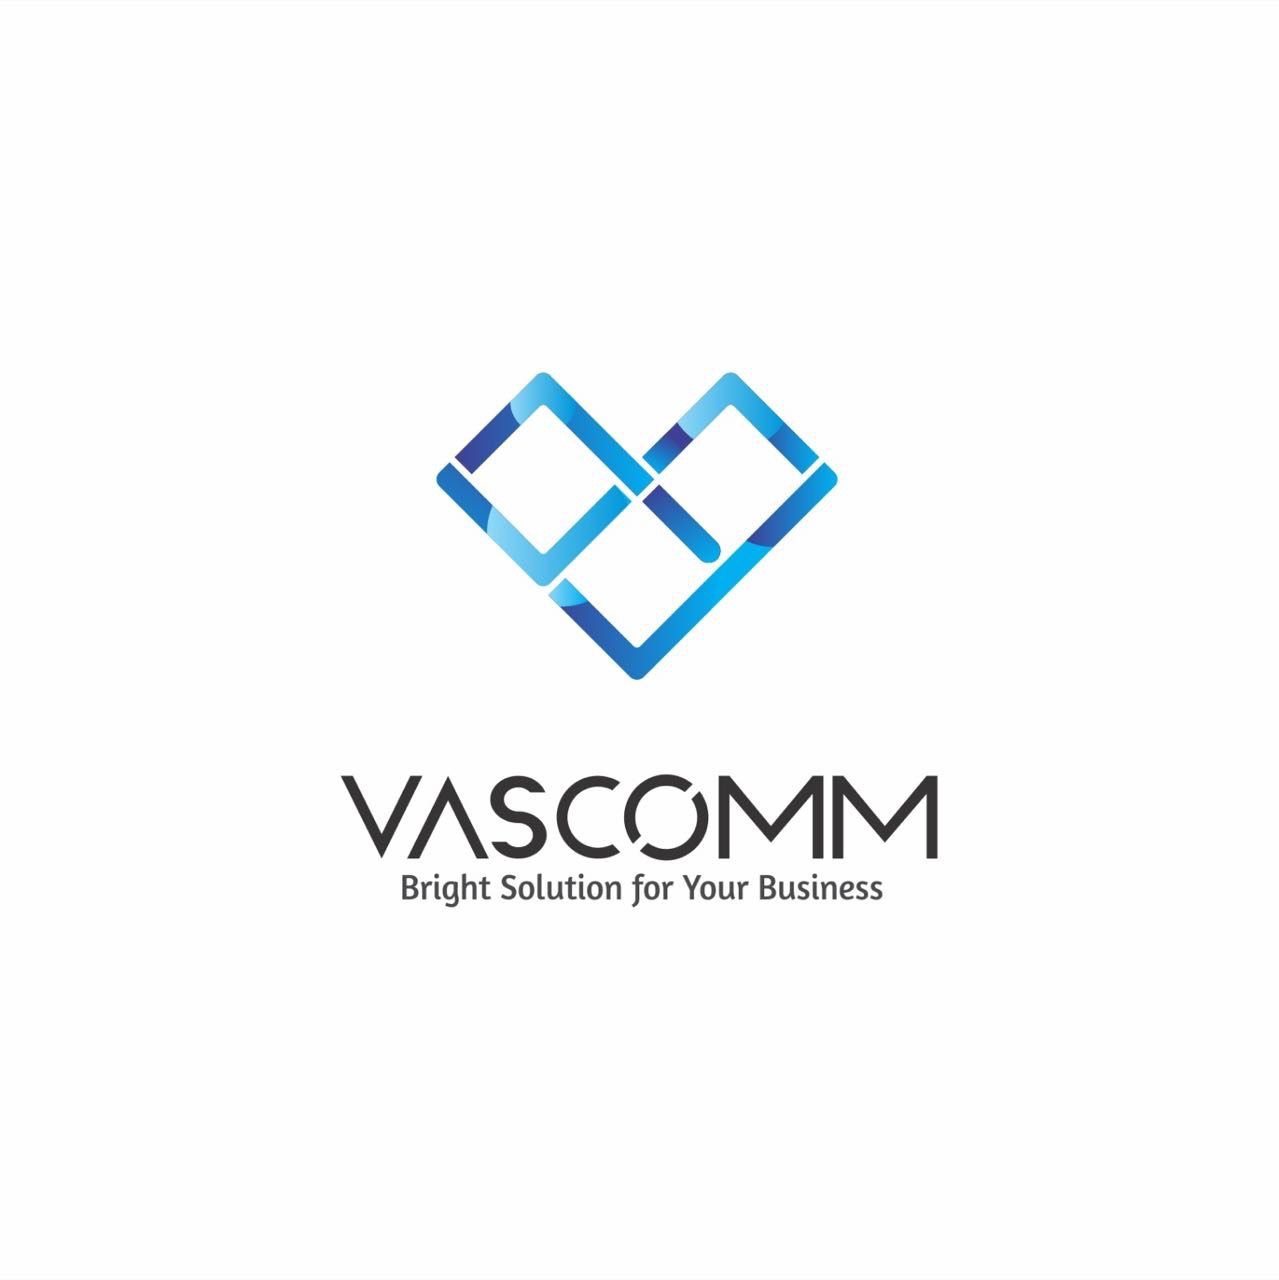 PT. Vascomm Solusi Teknologi logo